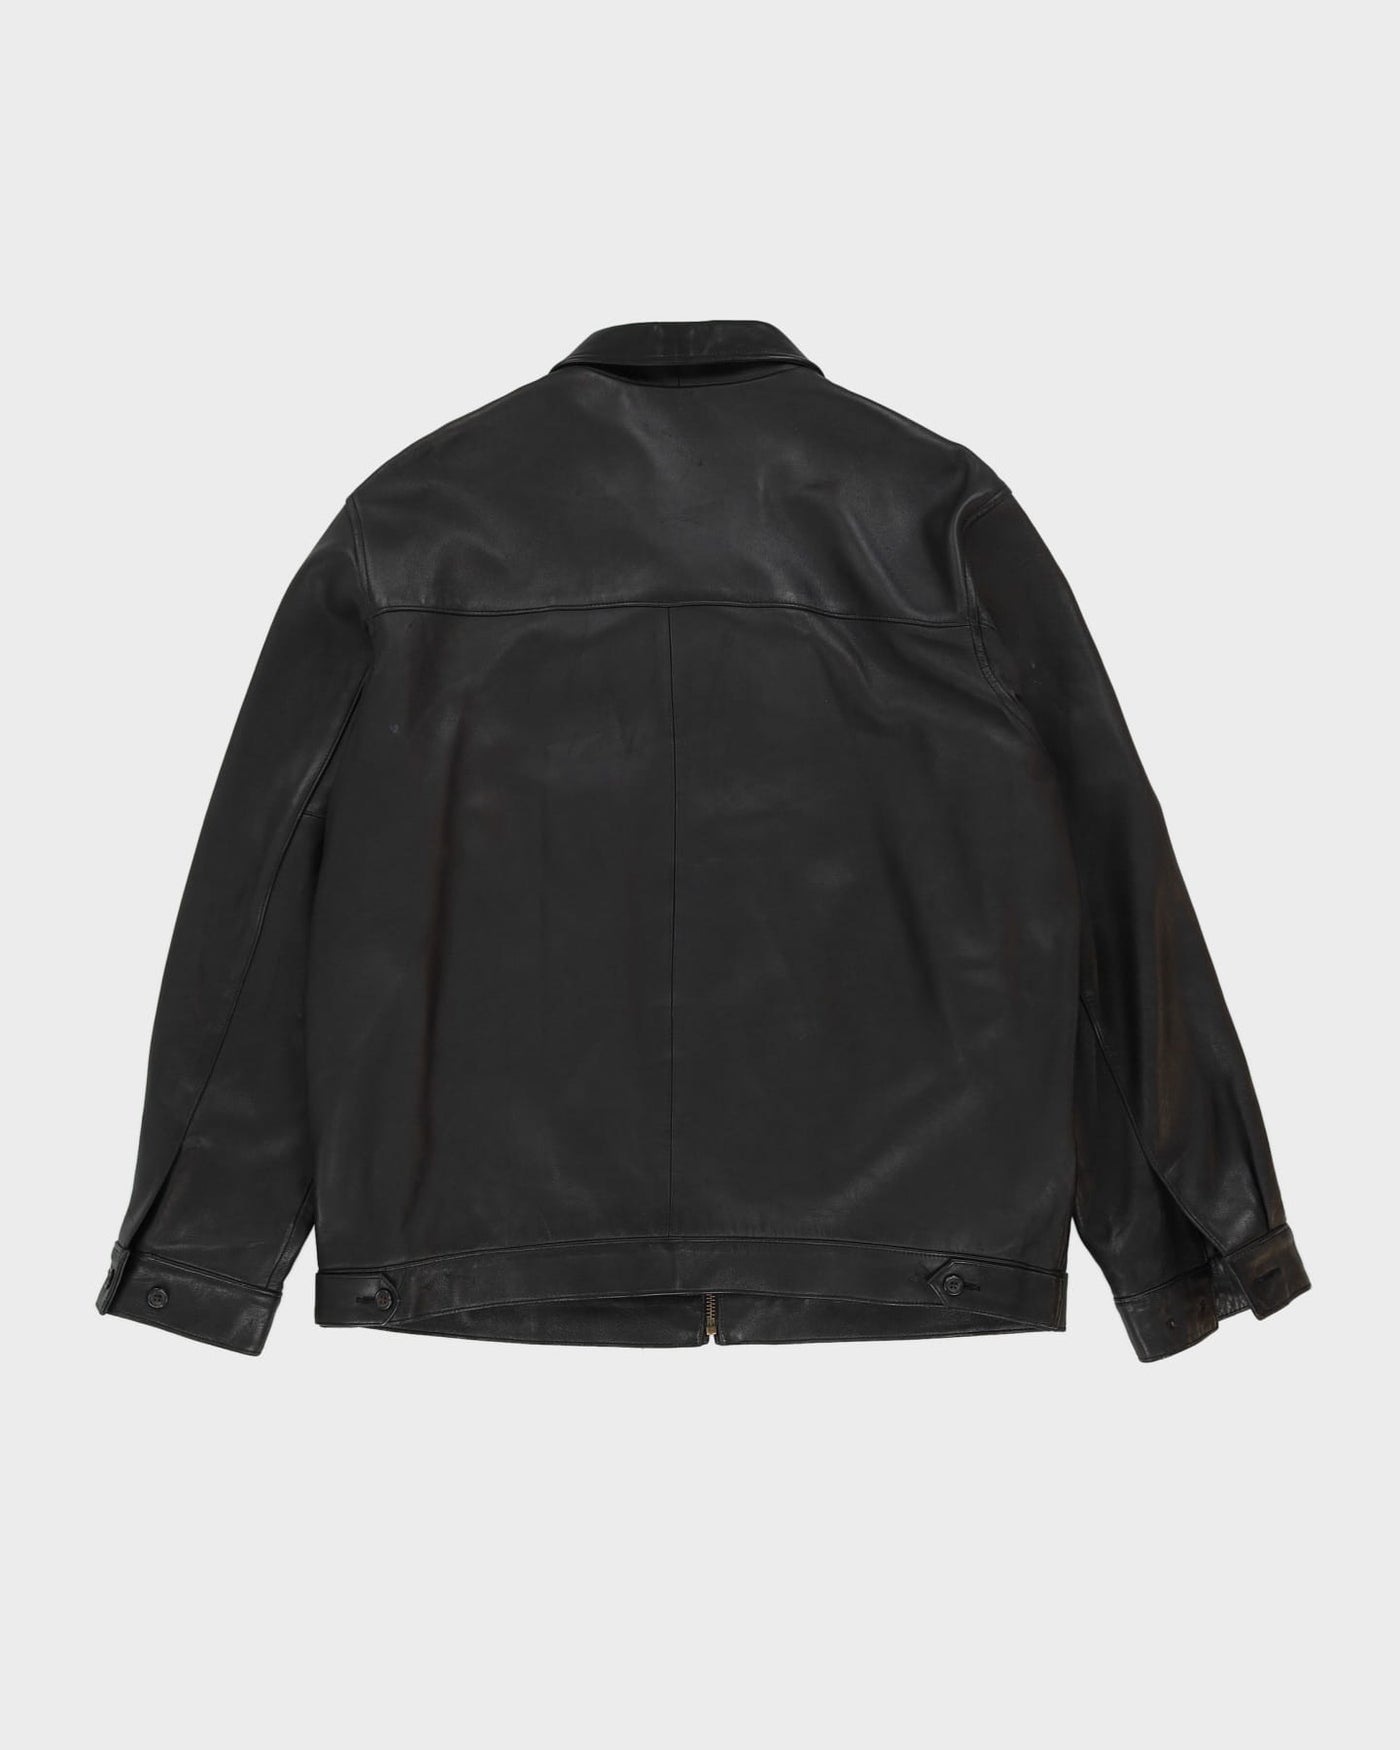 Vintage 90s Ralph Lauren Black Leather Jacket - L